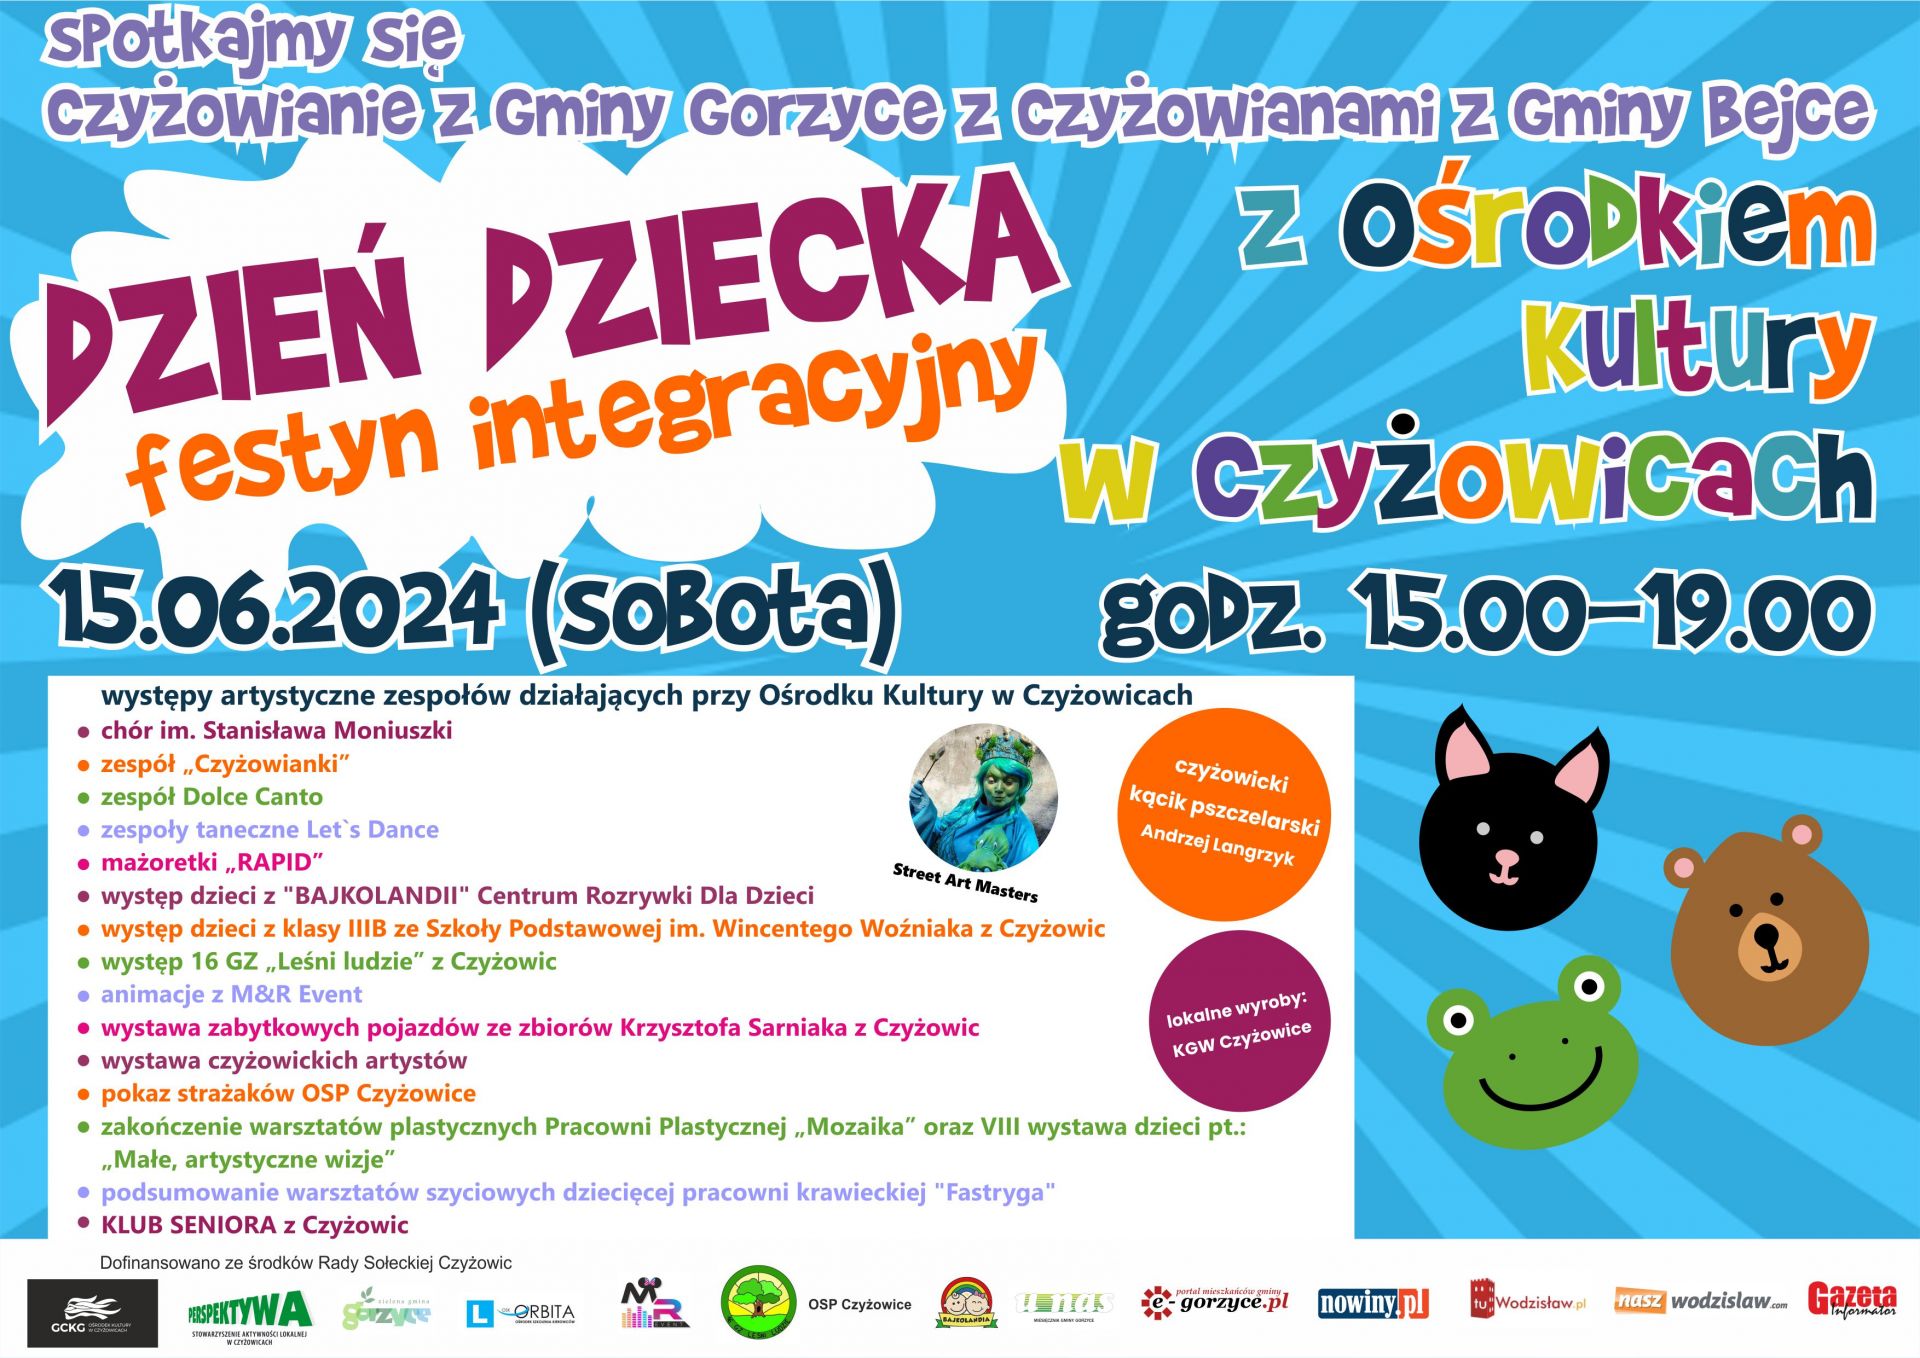 Dzień Dziecka - Festyn integracyjny z Ośrodkiem Kultury w Czyżowicach